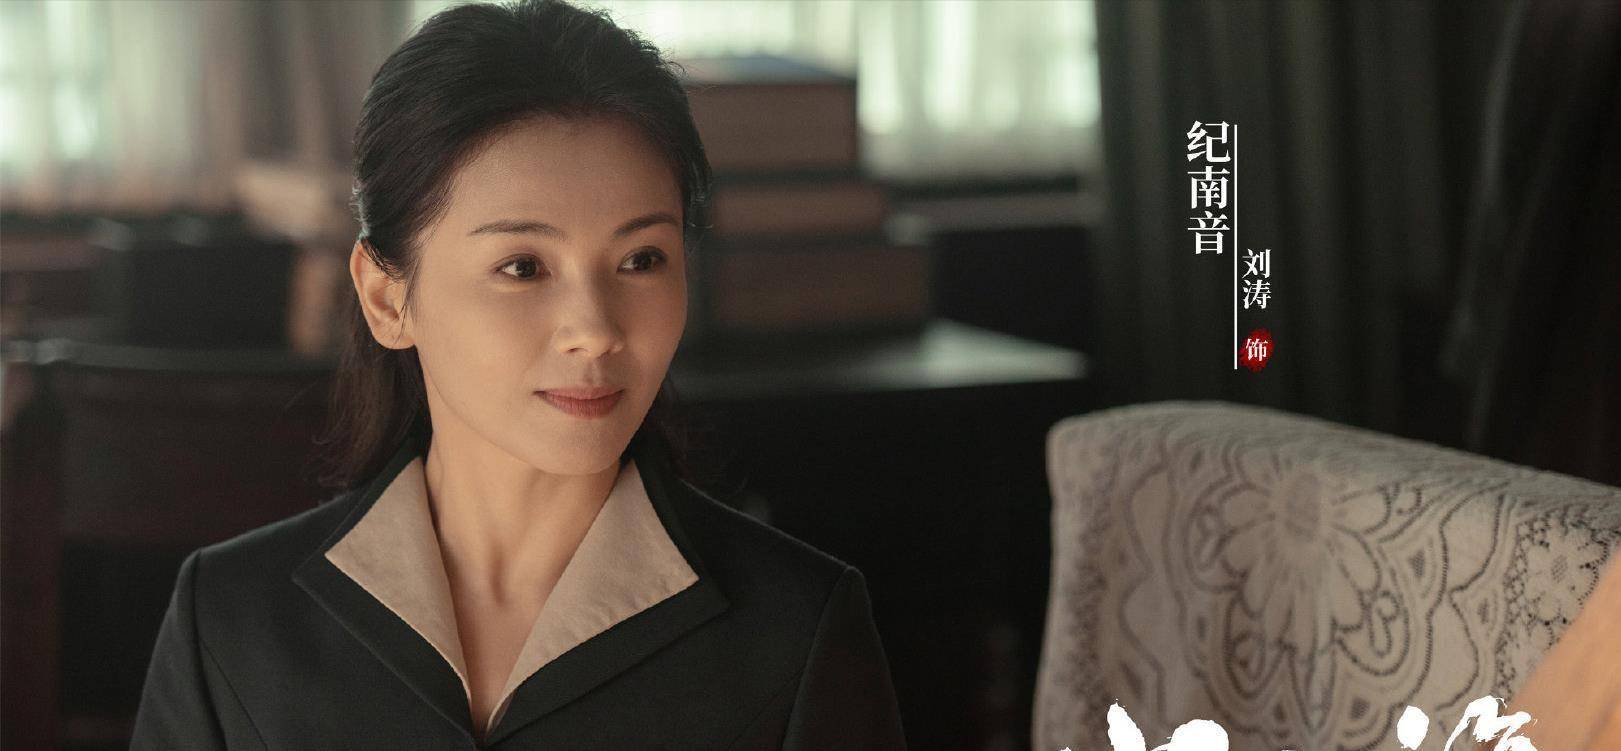 从霸道总裁到素颜女干部,中年演员刘涛的蜕变之路,该走向何方?